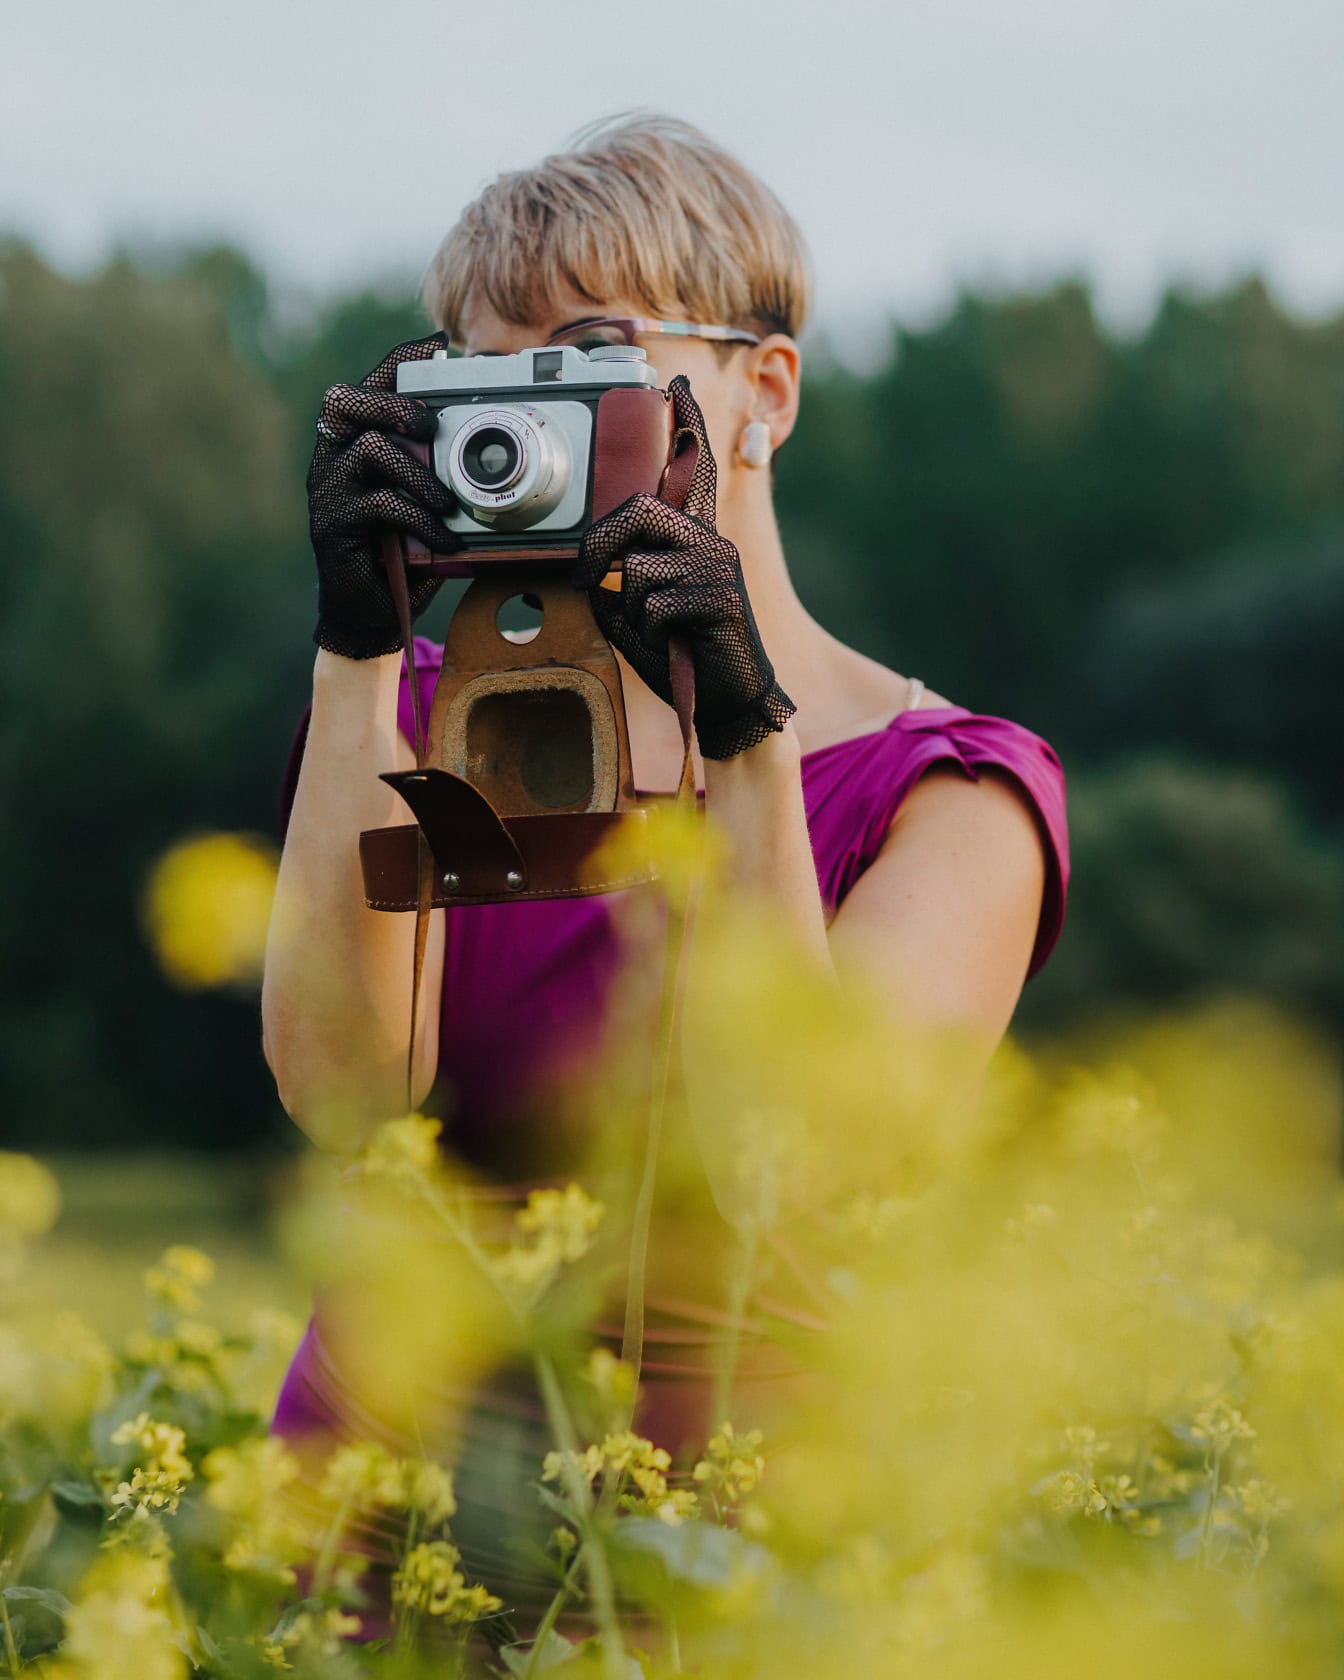 Potret seorang fotografer wanita mengenakan sarung tangan renda dan memegang kamera foto analog tua di depan wajahnya di ladang bunga